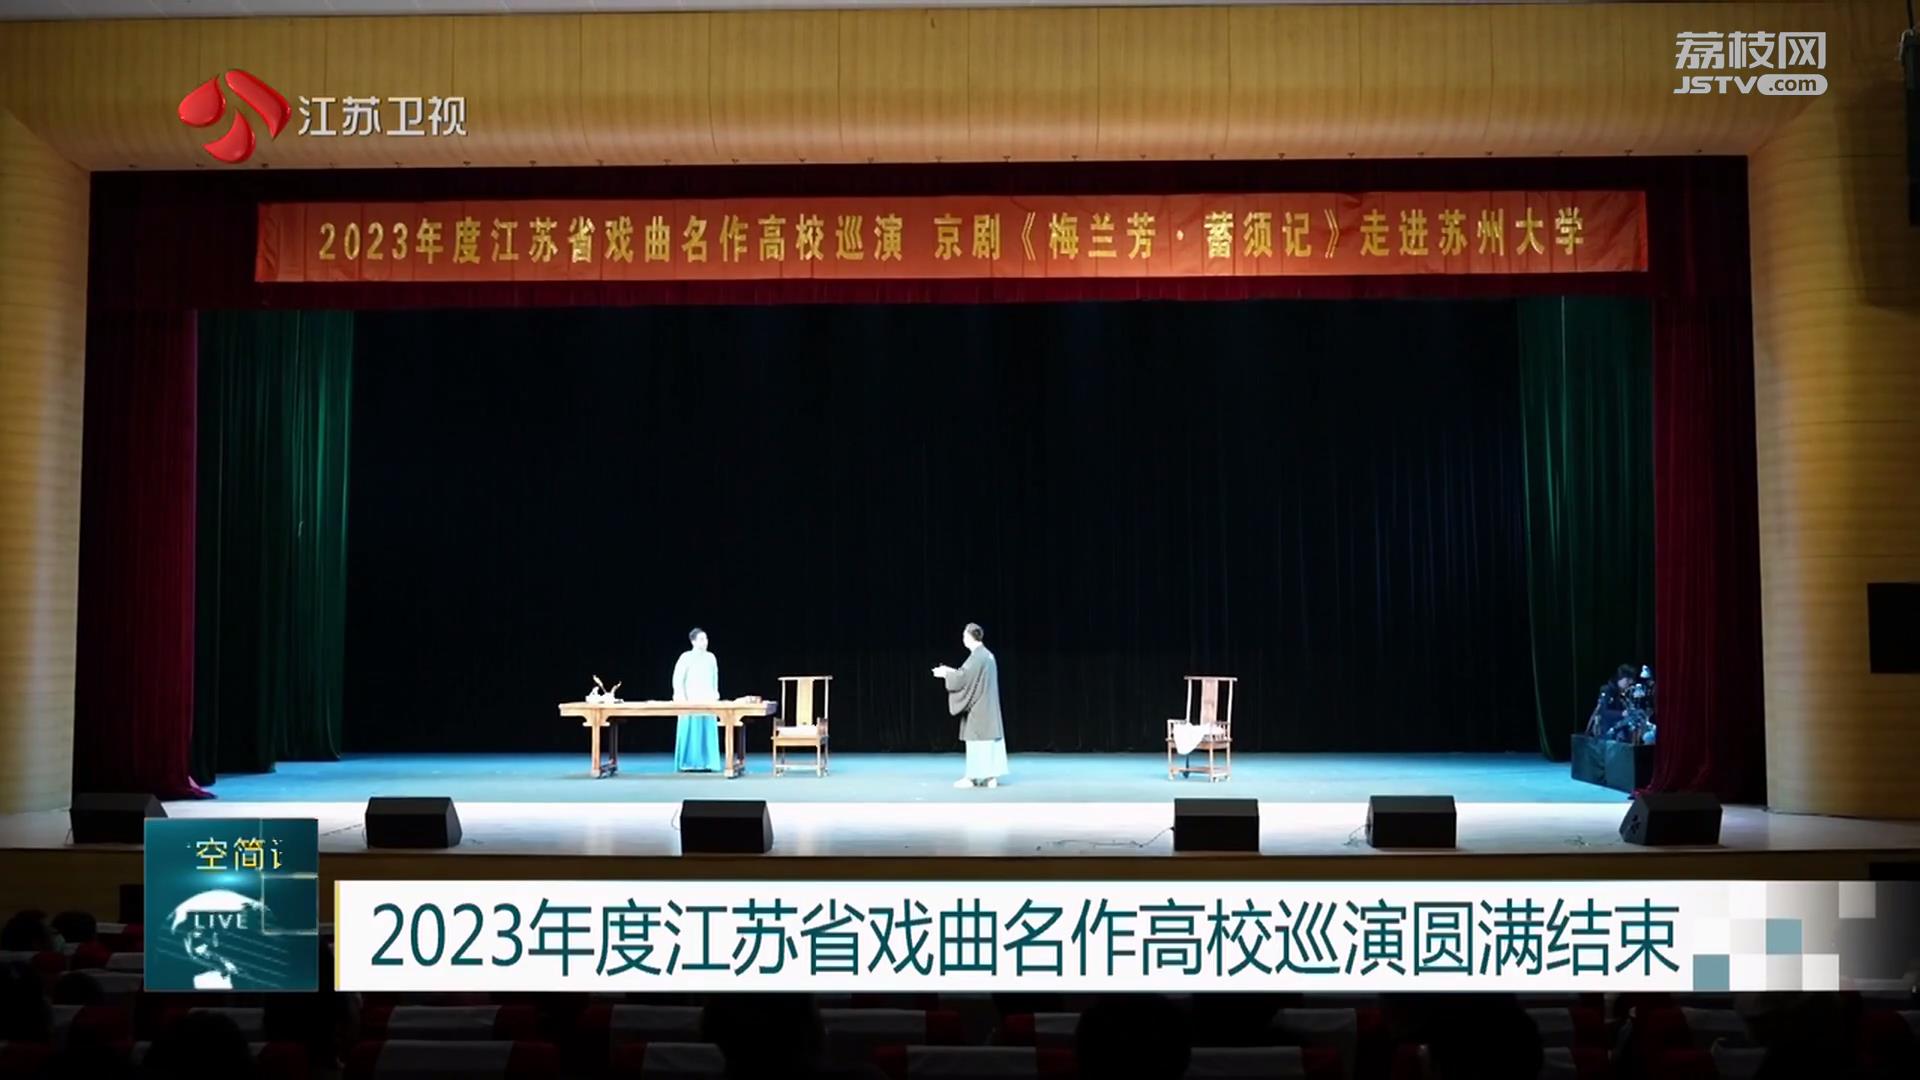 2023年度江苏省戏曲名作高校巡演圆满结束